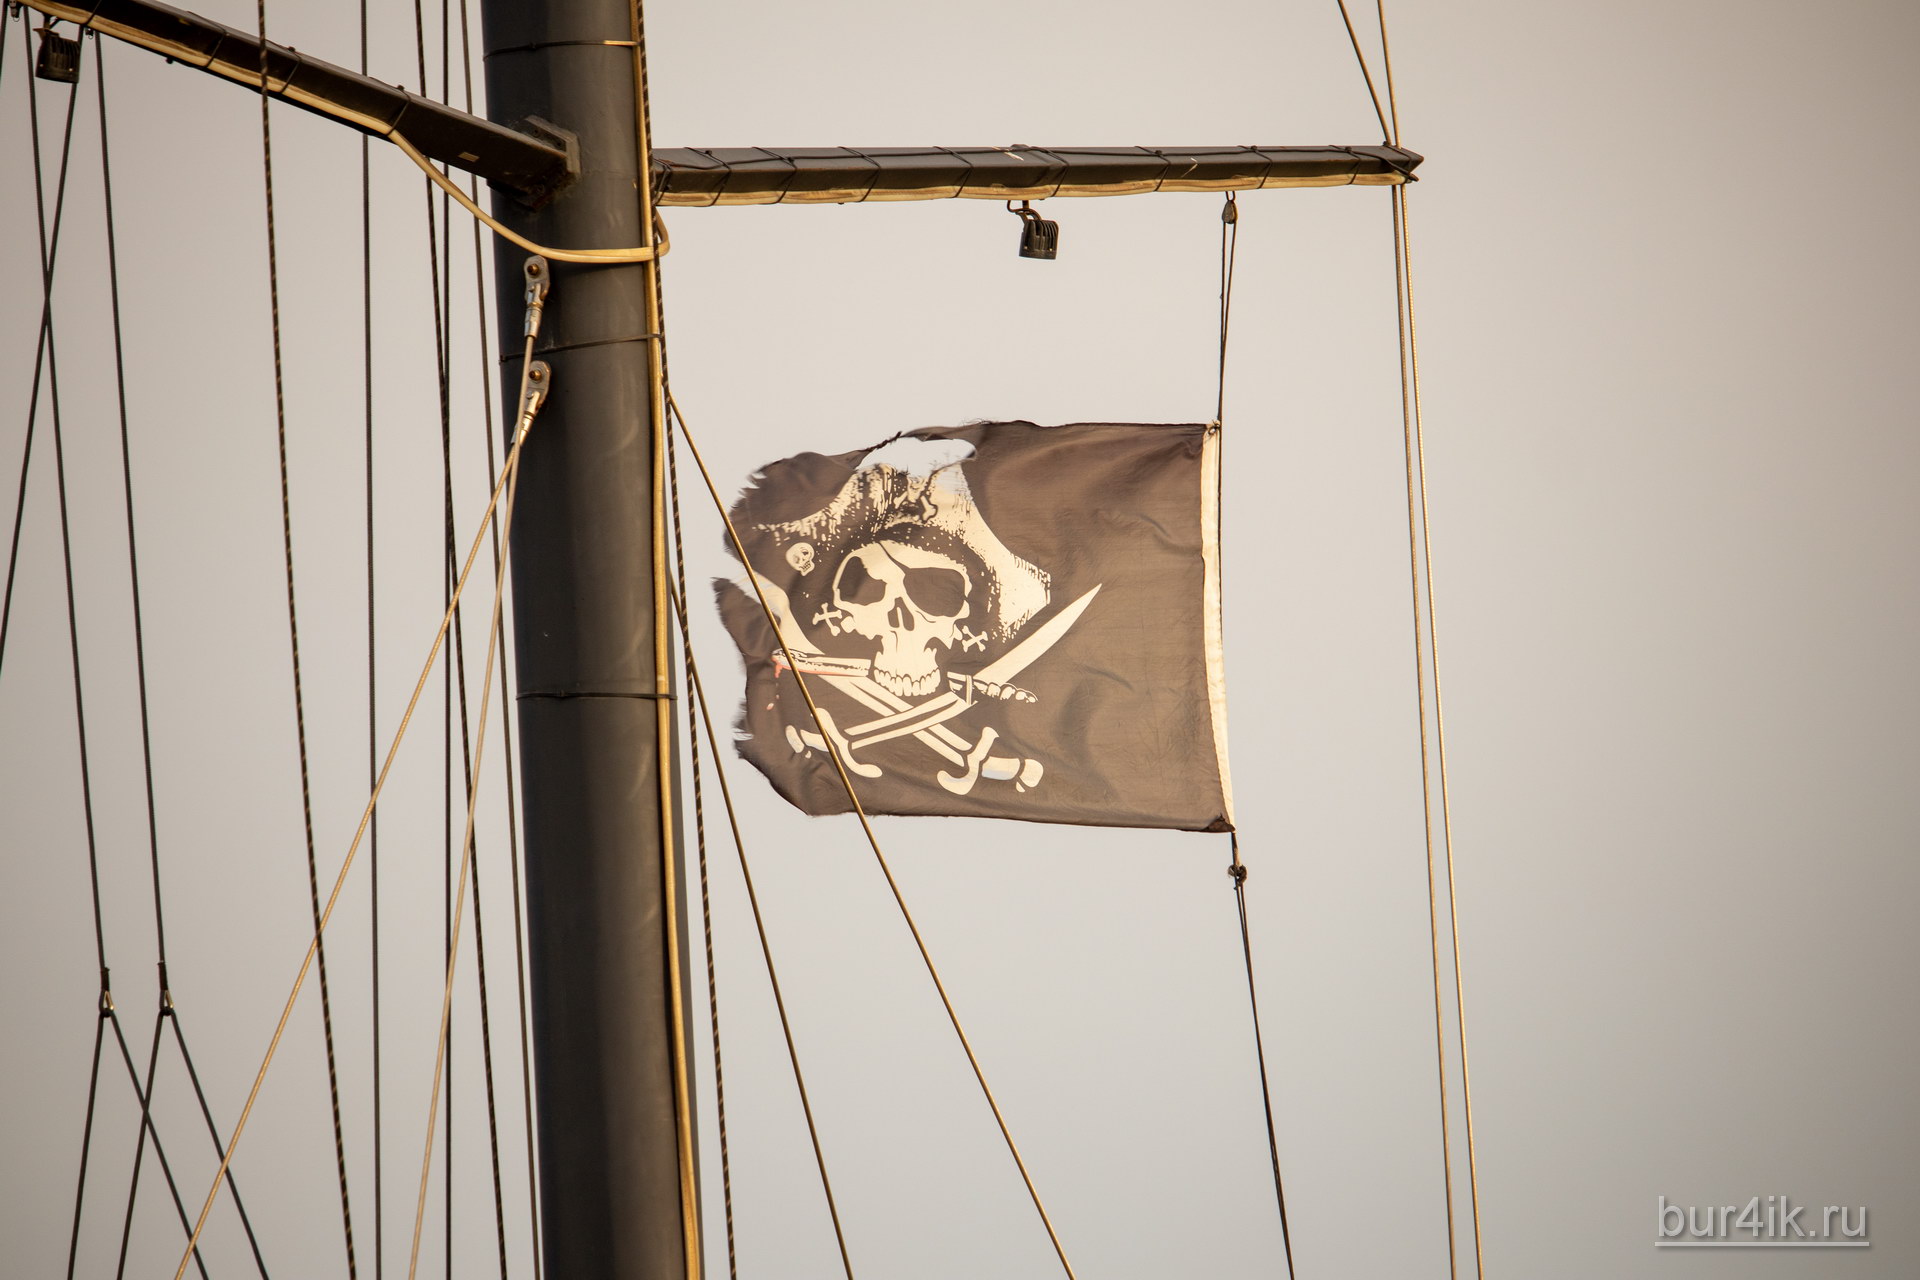 Черный пиратский флаг с черепом и саблями на мачте фрегата 4